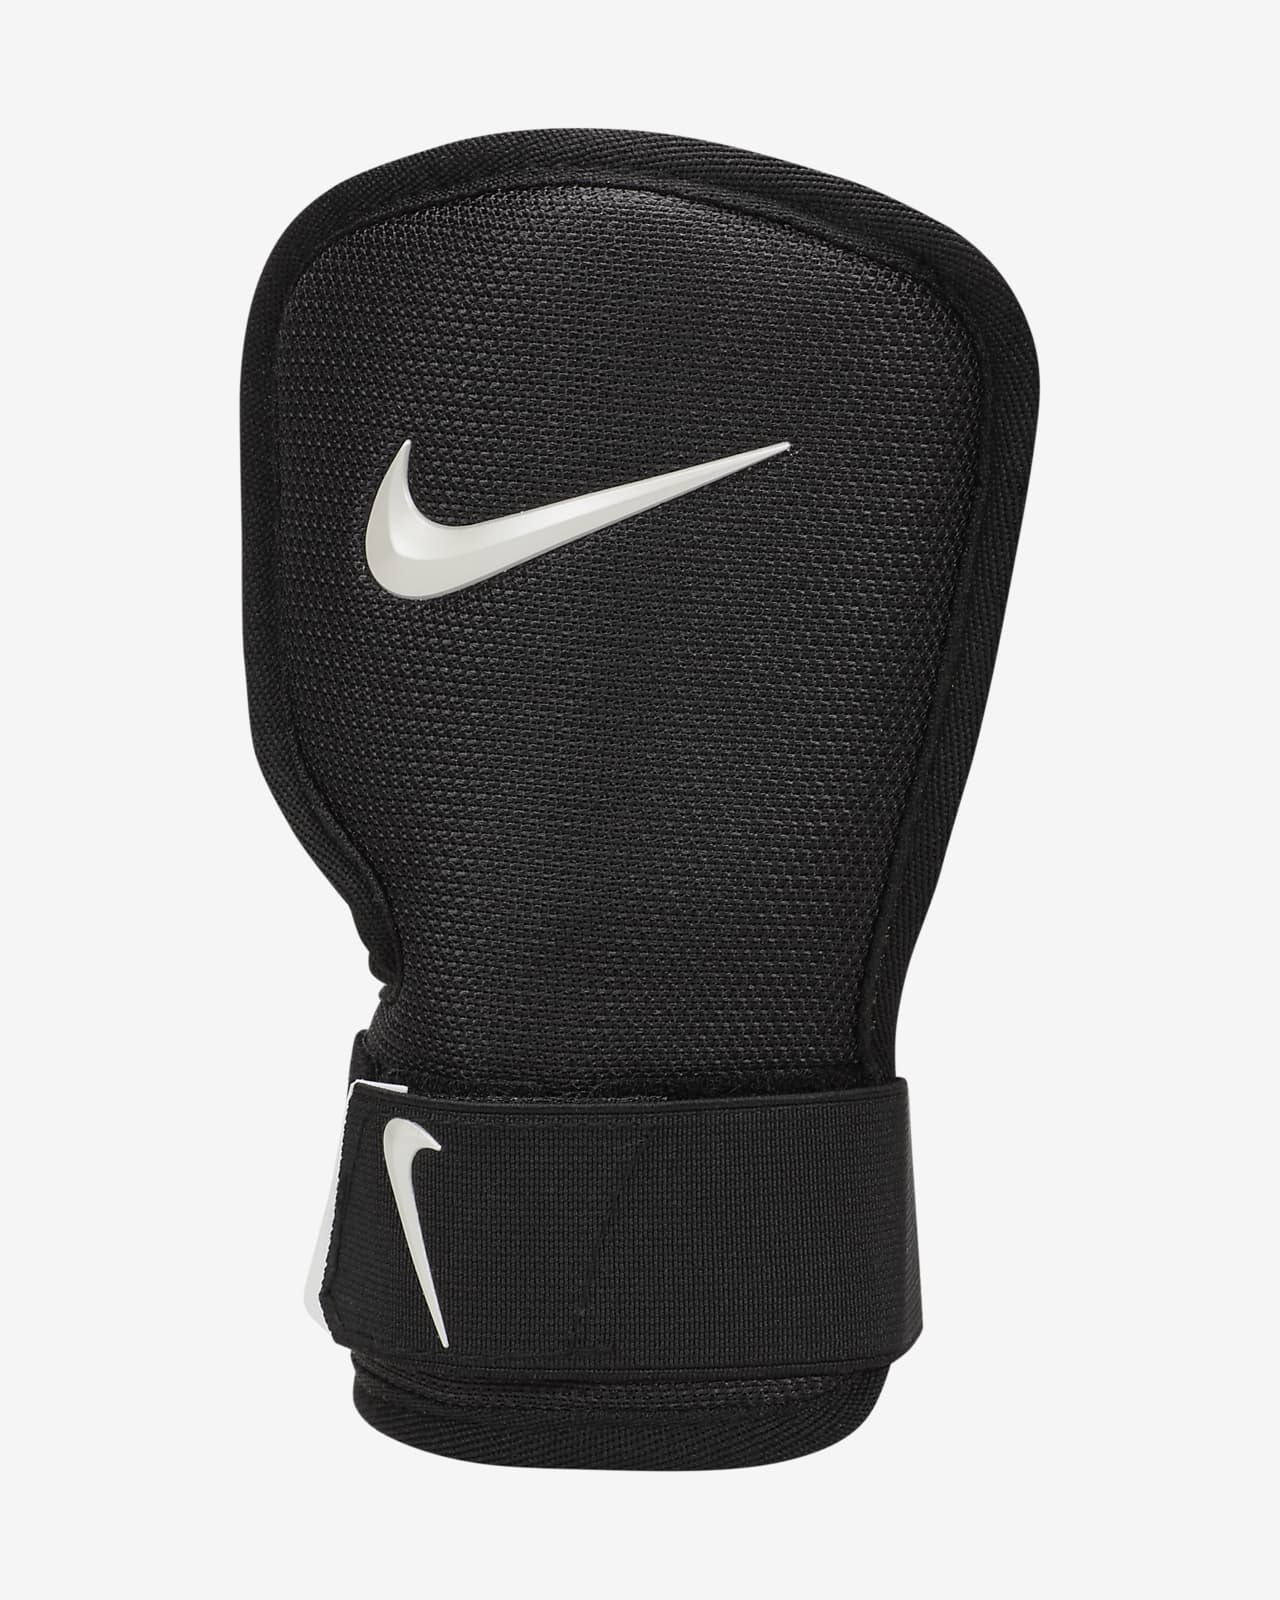 Protección de mano para bateador de béisbol (bateador diestro) Nike Diamond 2.0